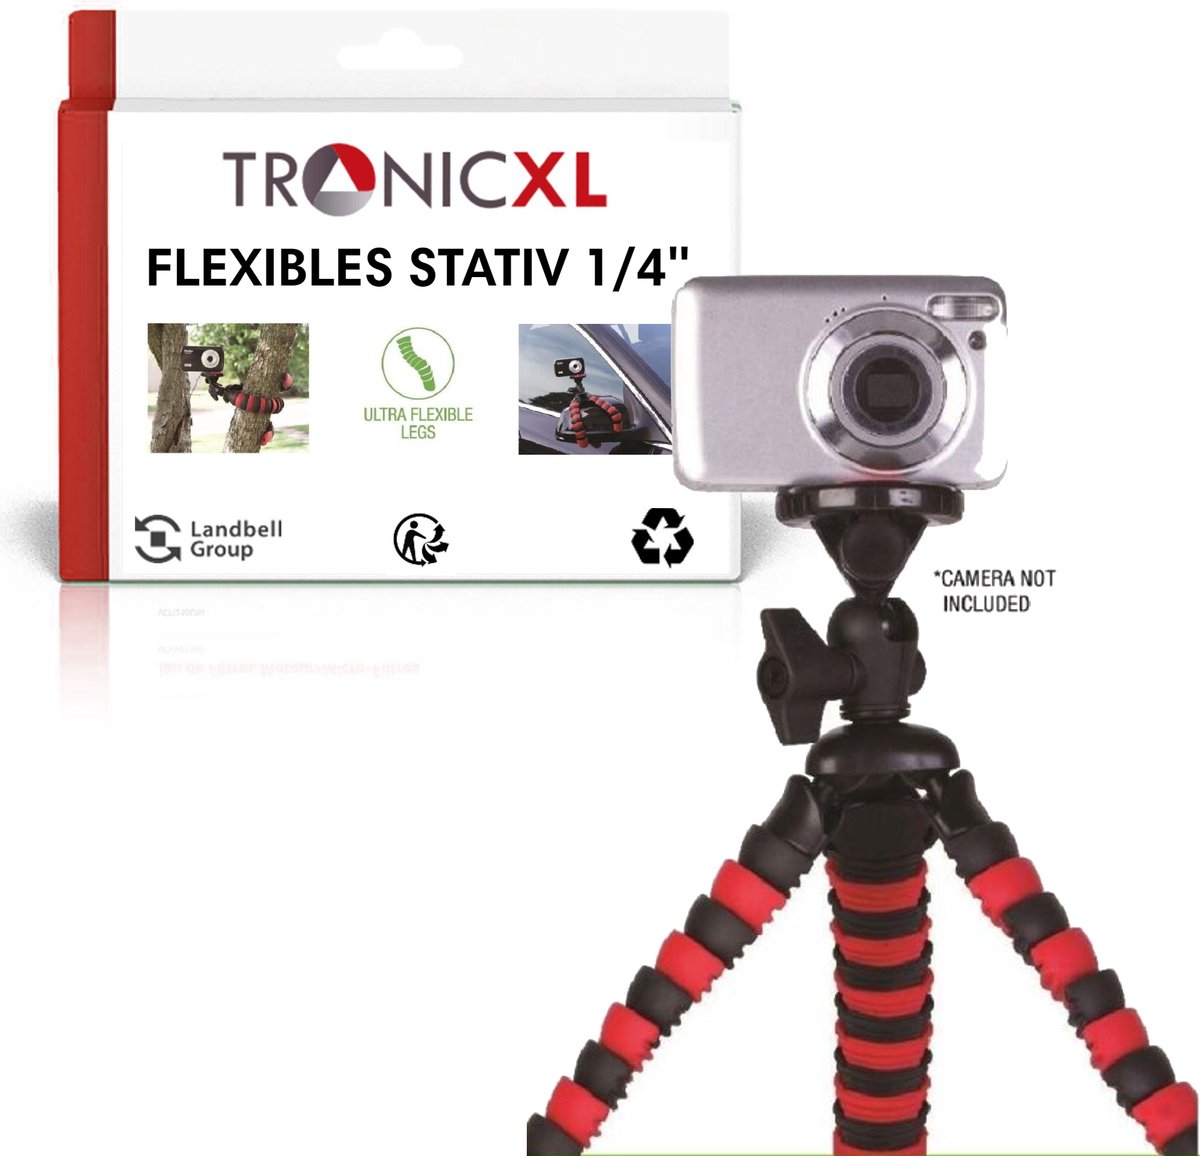 Mini trépied flexible pour appareil photo reflex numérique